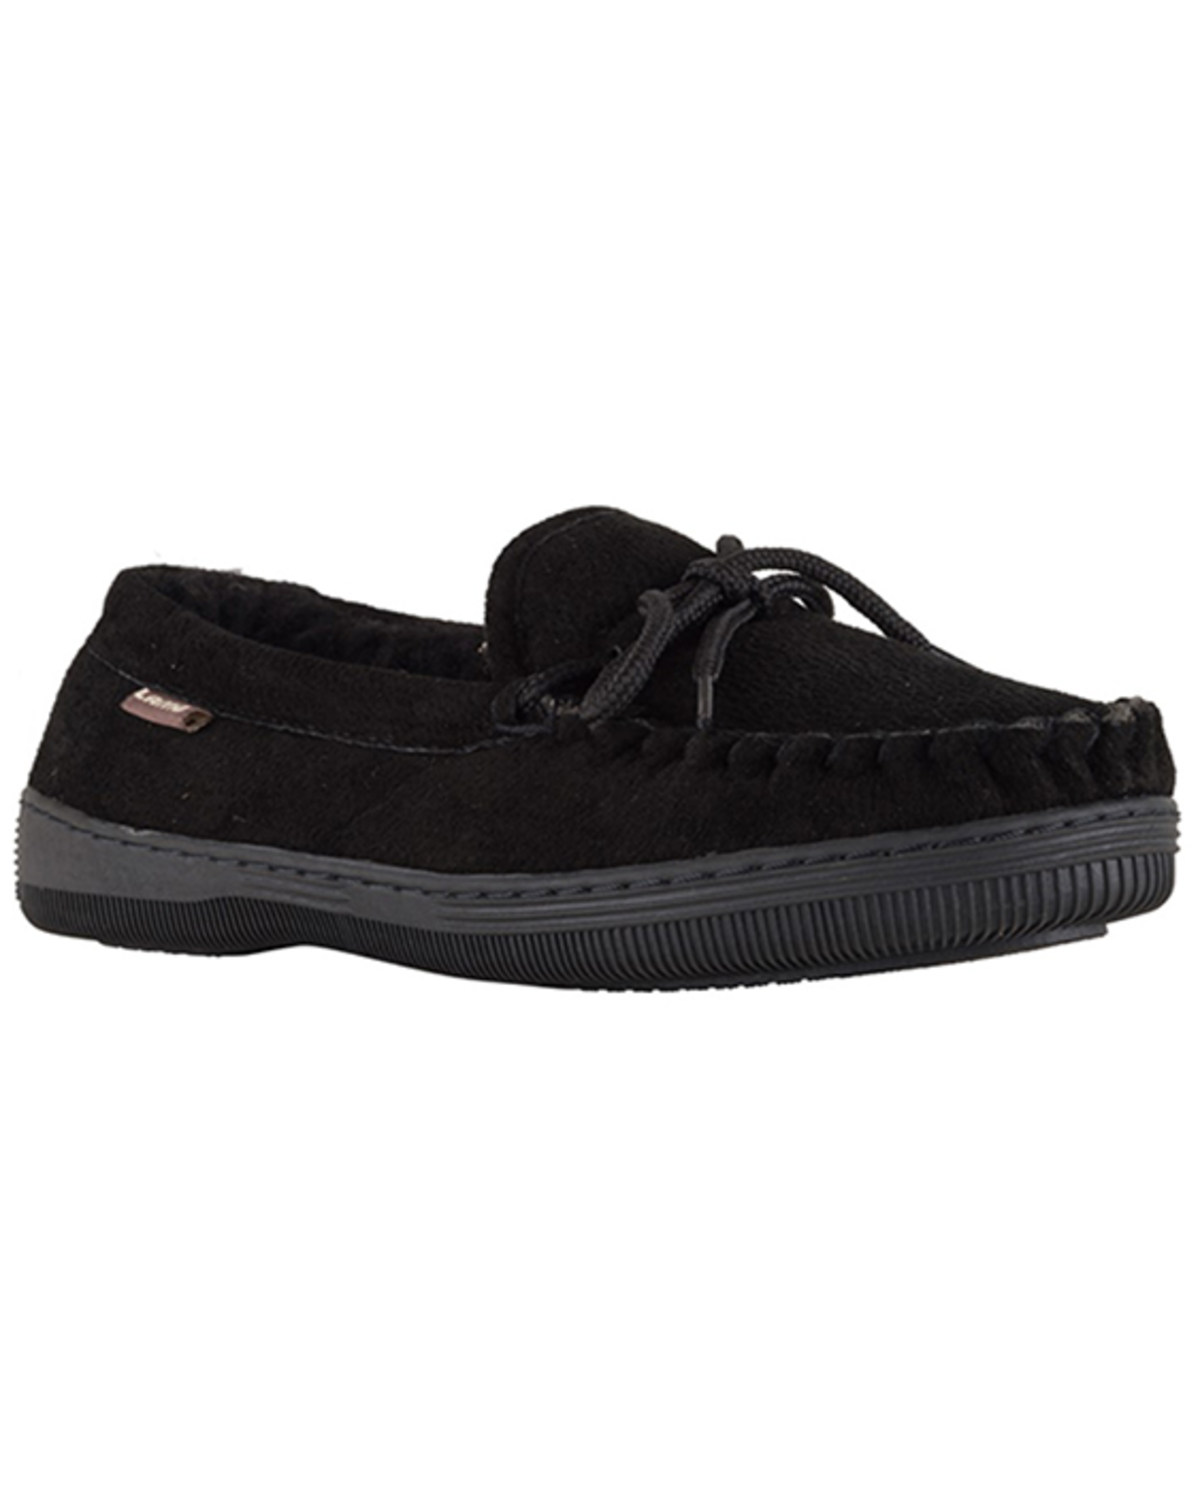 Lamo Footwear Men's Leather Moccasin Slippers - Moc Toe